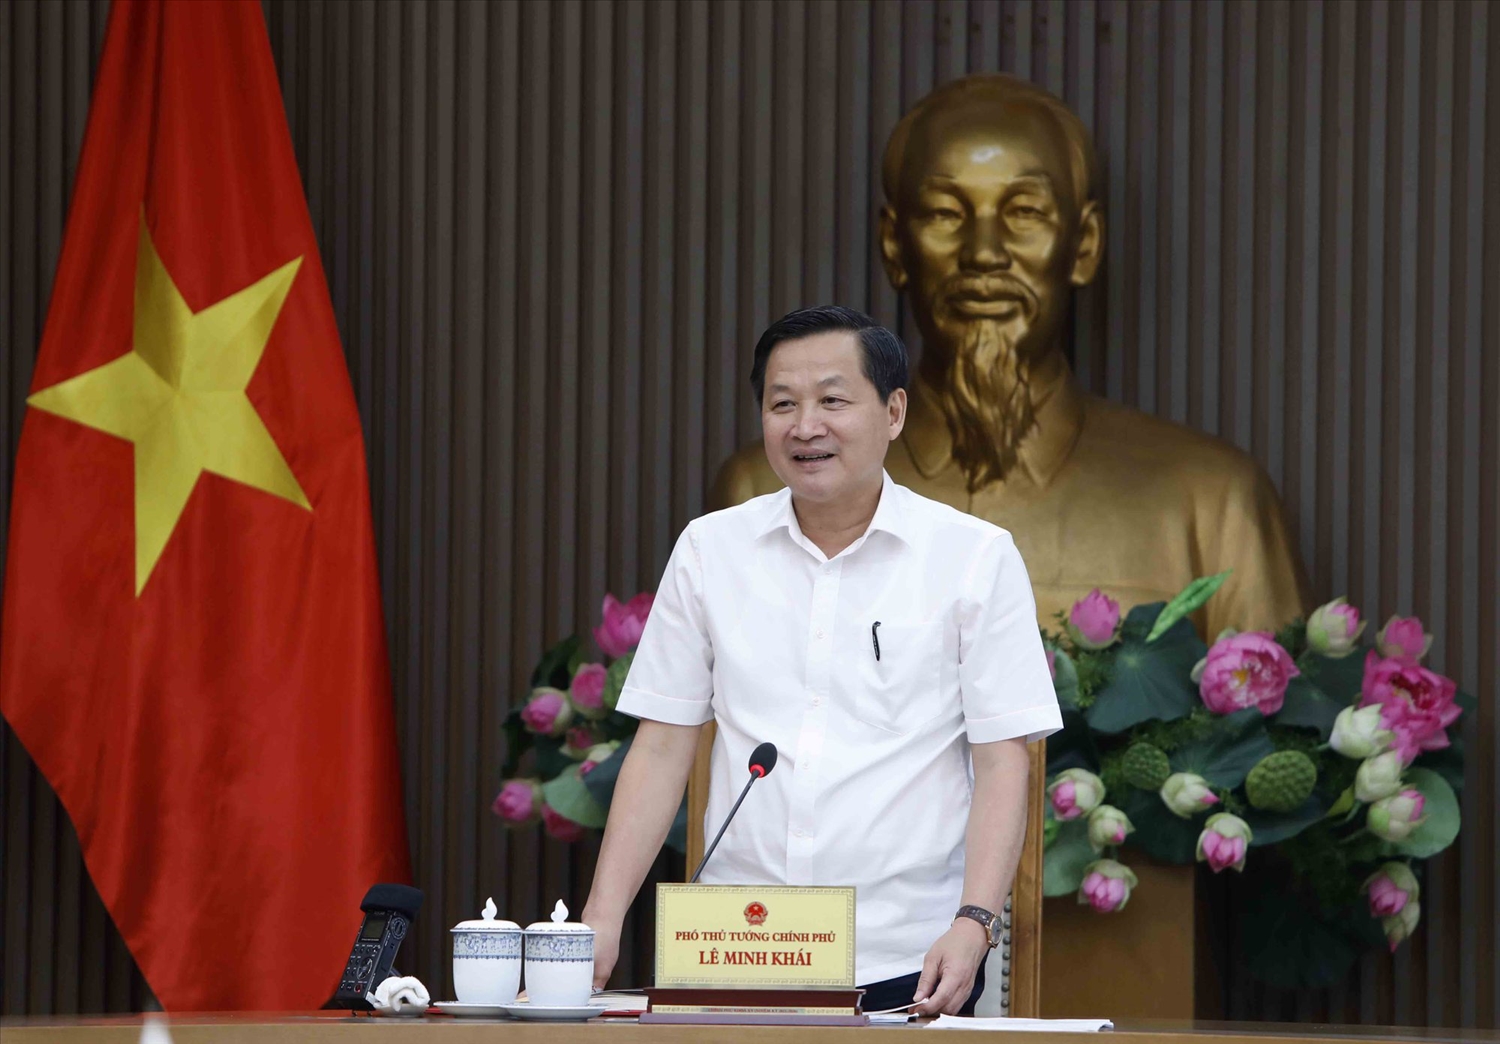 Phó Thủ tướng Lê Minh Khái yêu cầu các bộ ngành, cơ quan Trung ương, địa phương tiếp tục thực hiện nghiêm, hiệu quả các văn bản chỉ đạo của Chính phủ, Thủ tướng Chính phủ về đầu tư công - Ảnh VGP/Trần Mạnh